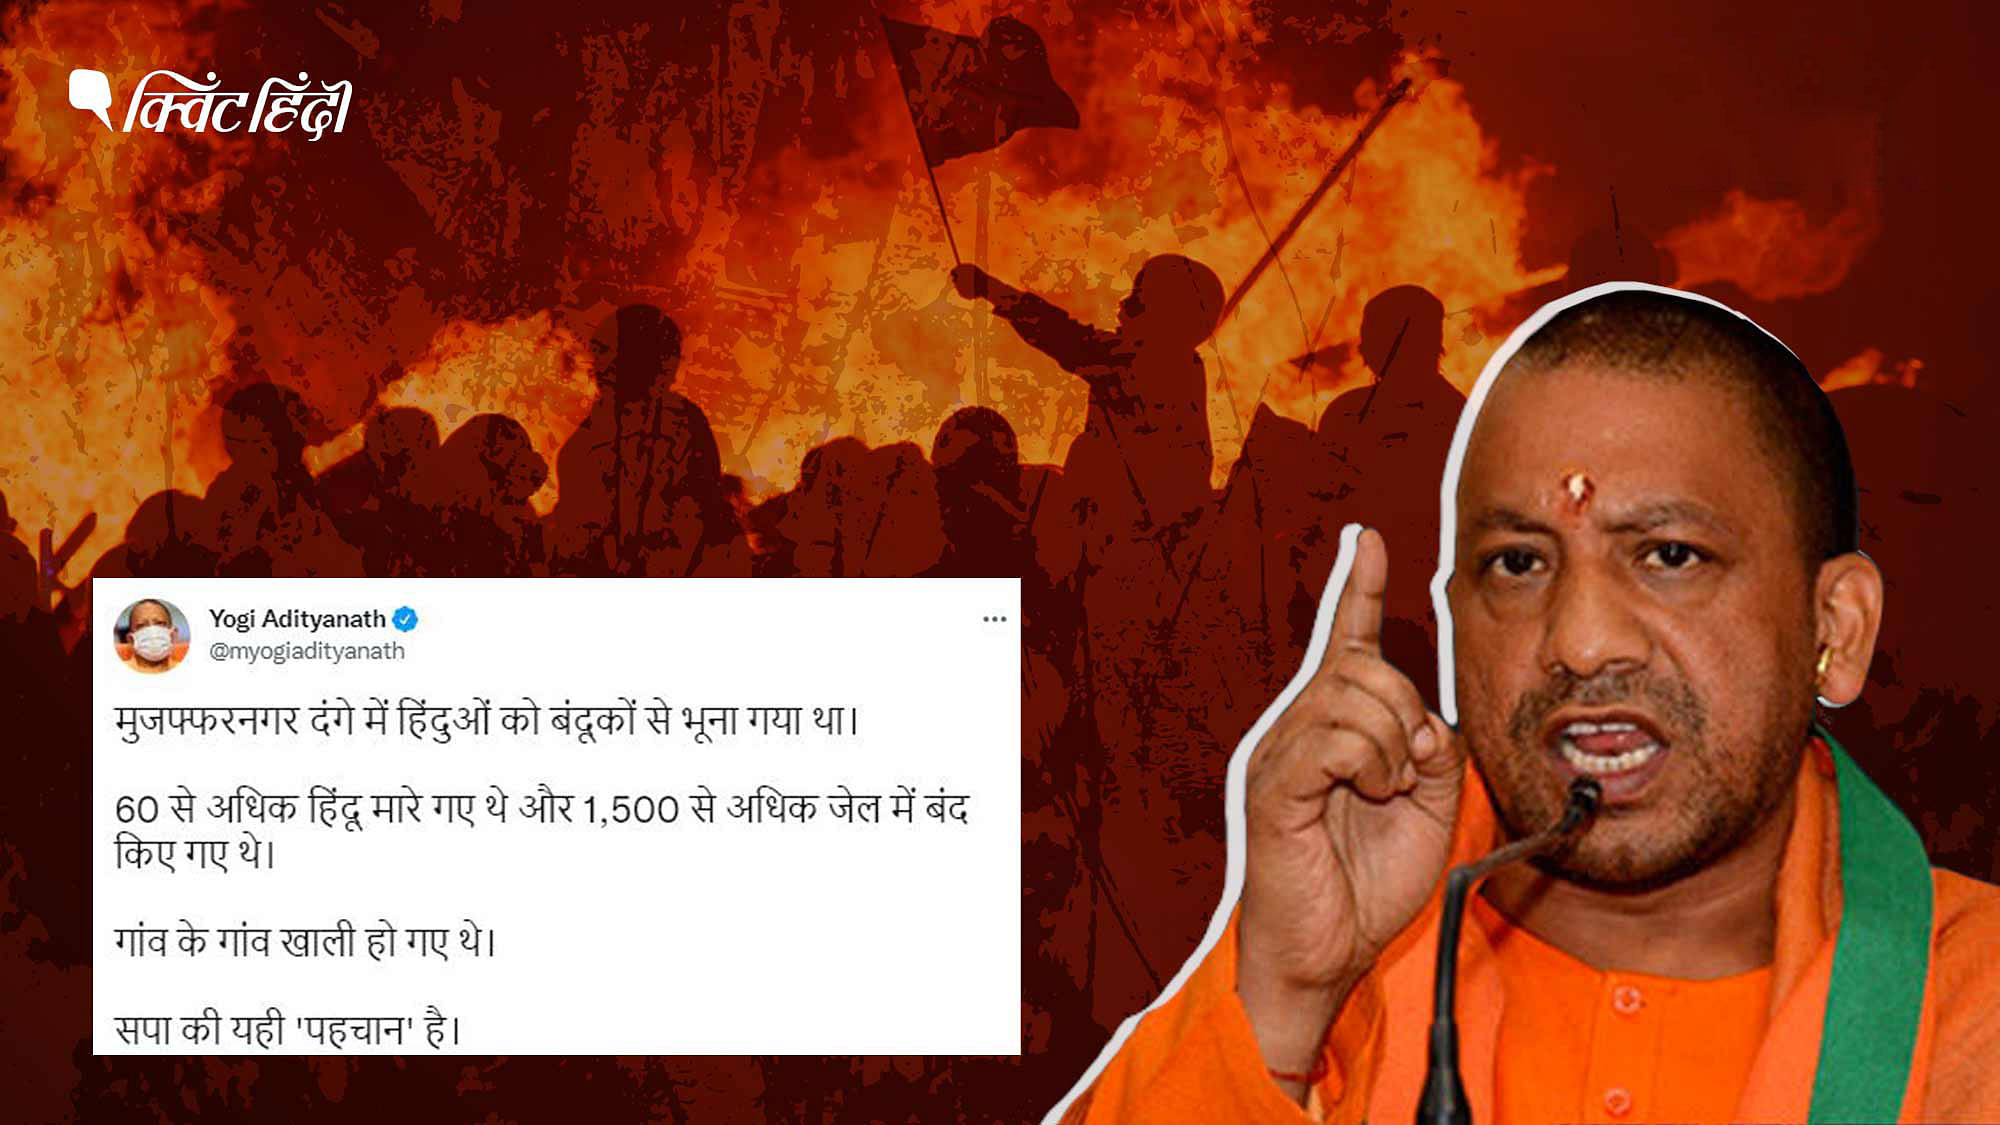 <div class="paragraphs"><p> योगी ने ट्वीट कर कहा था कि मुजफ्फरनगर दंगों में 60 से ज्यादा हिंदुओं की हत्या की गई थी</p></div>